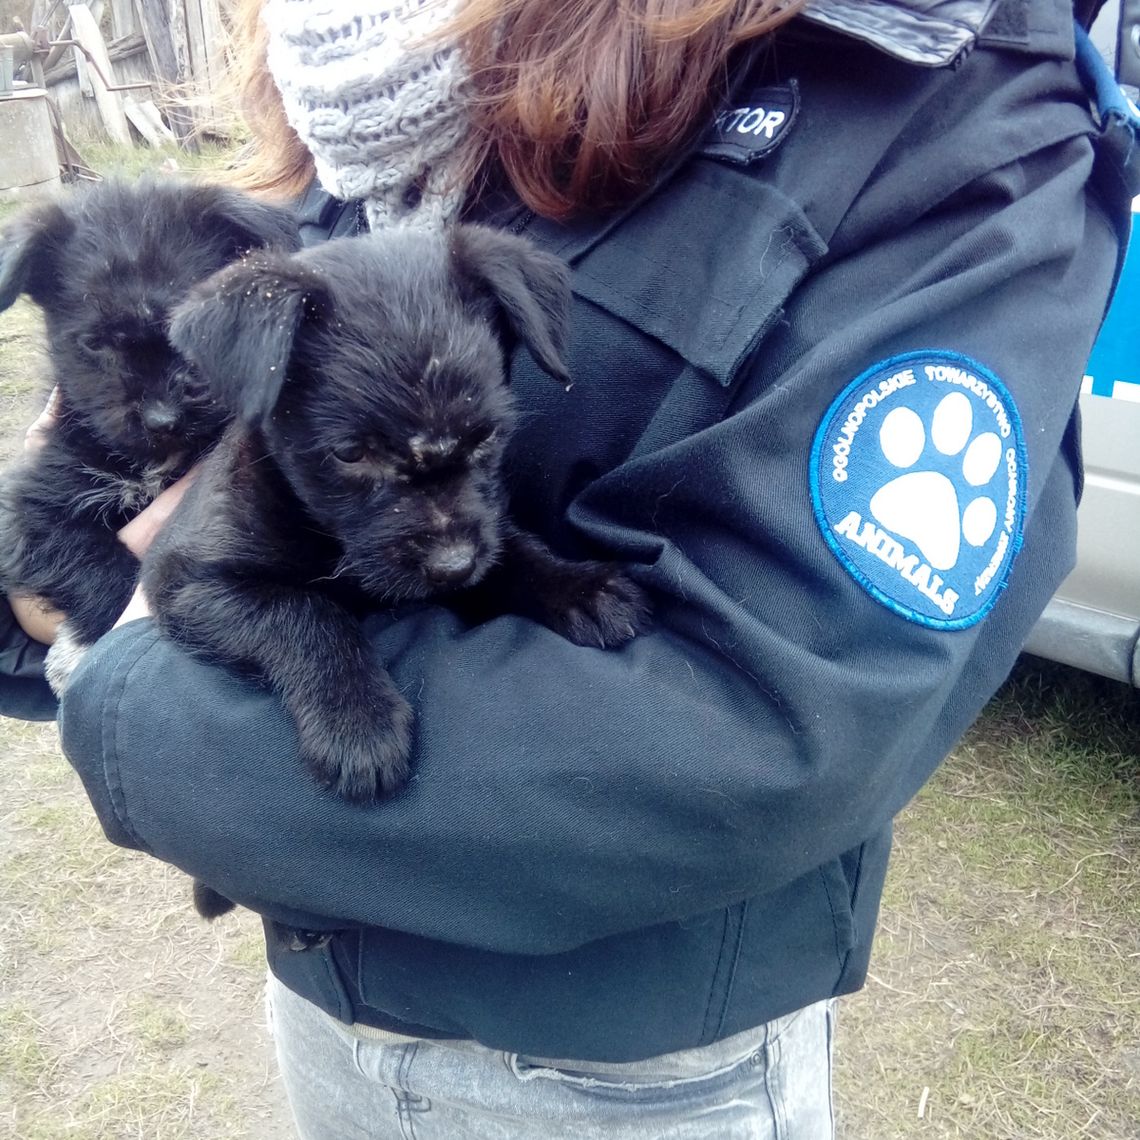 Interwencja w sprawie bezpańskich psów pod Bydgoszczą